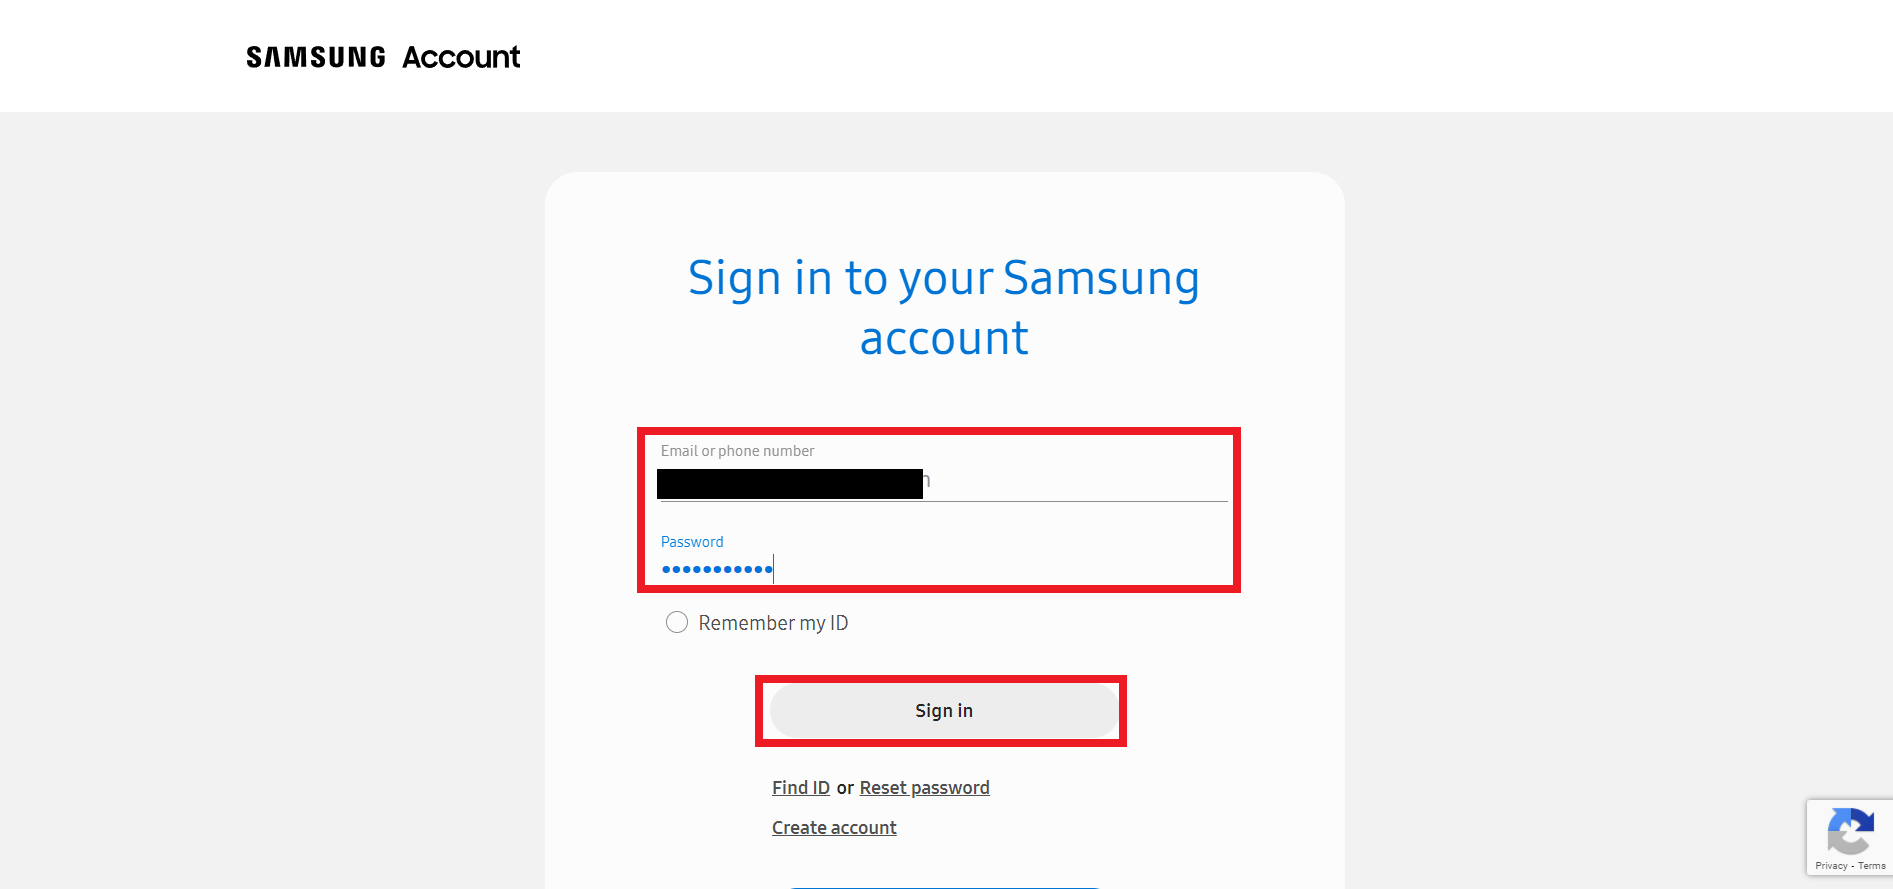 Connectez-vous à votre compte Samsung avec votre e-mail ou numéro de téléphone et votre mot de passe